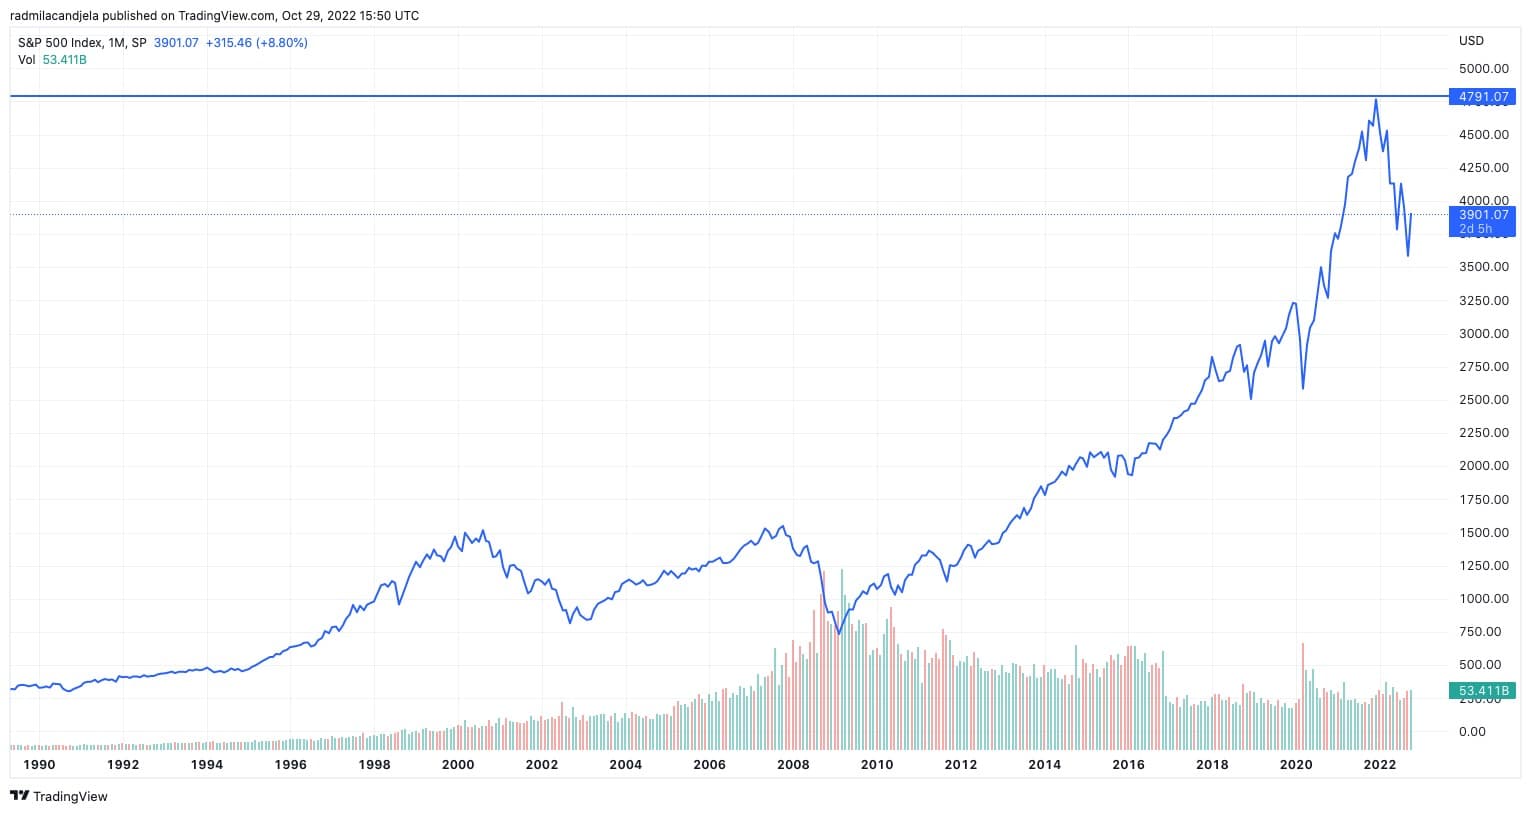 Gráfico mostrando o índice S&P 500 de 1990 a 2022 (Fonte: TradingView)